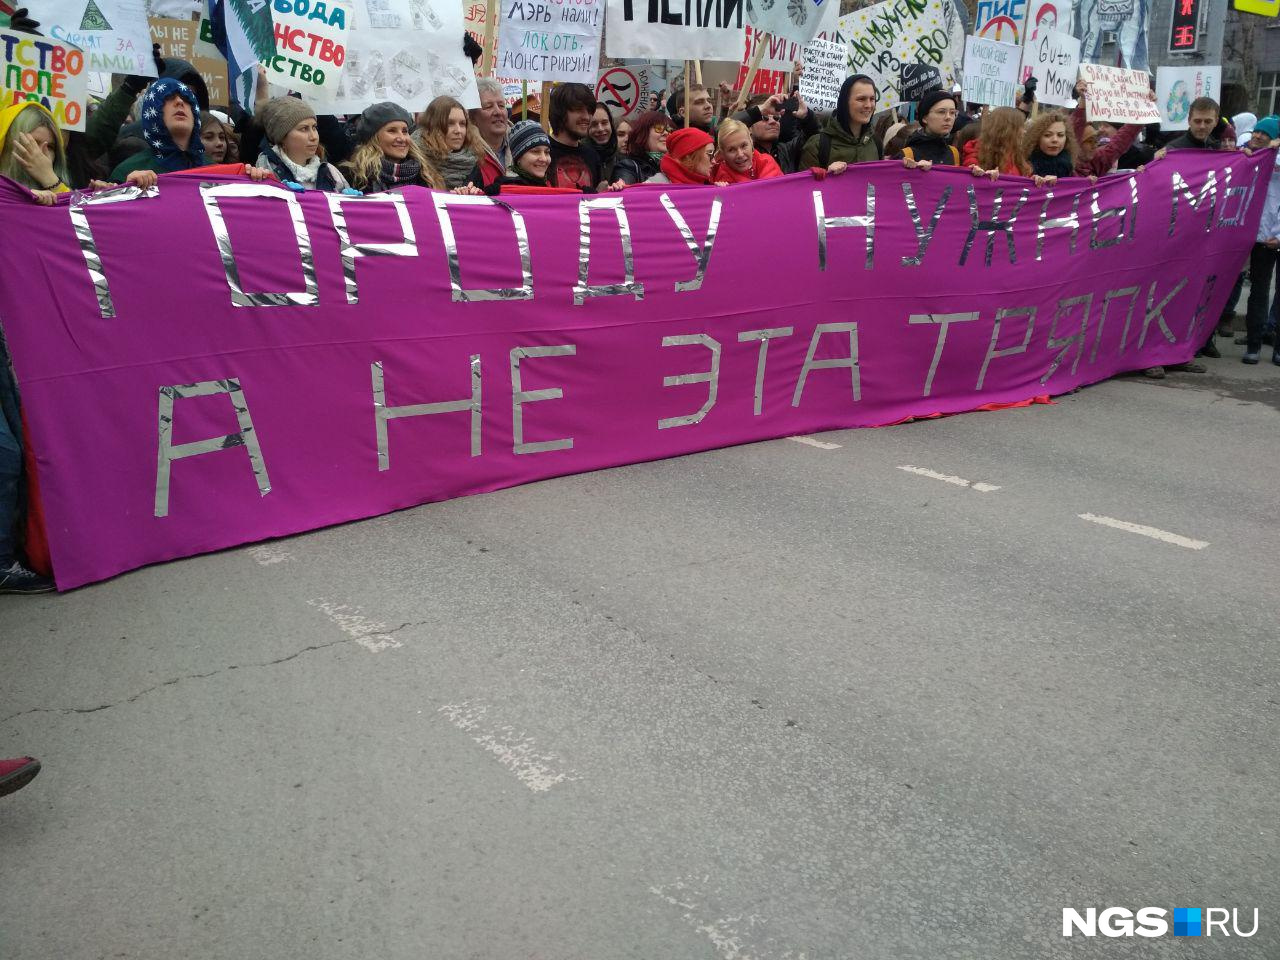 Участники акции впервые за 15 лет меняют лозунг во время шествия